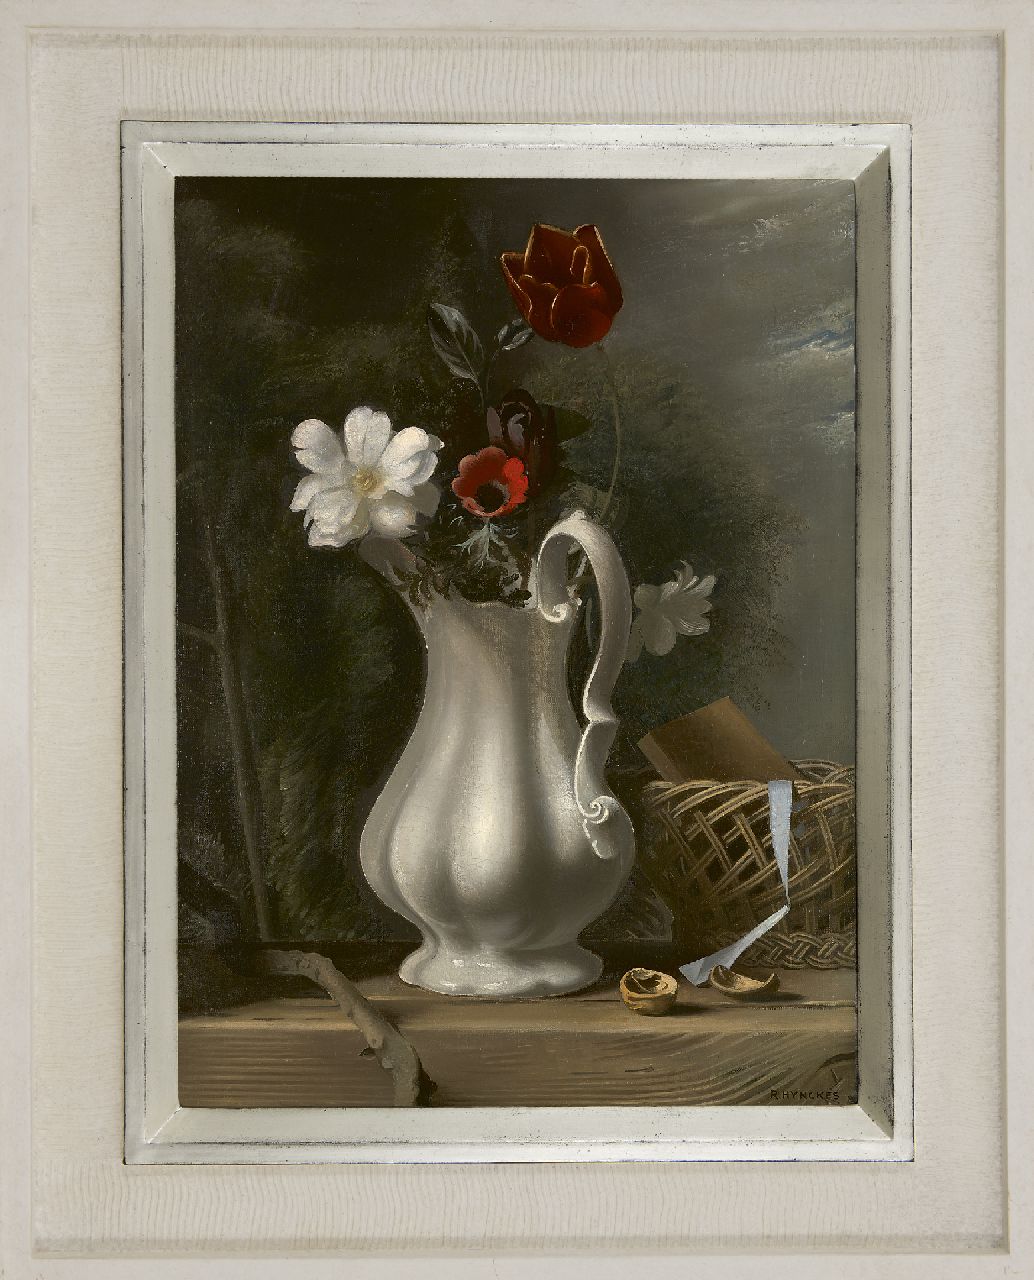 Hynckes R.  | Raoul Hynckes, Bloemstilleven, olieverf op doek 55,5 x 40,6 cm, gesigneerd rechtsonder